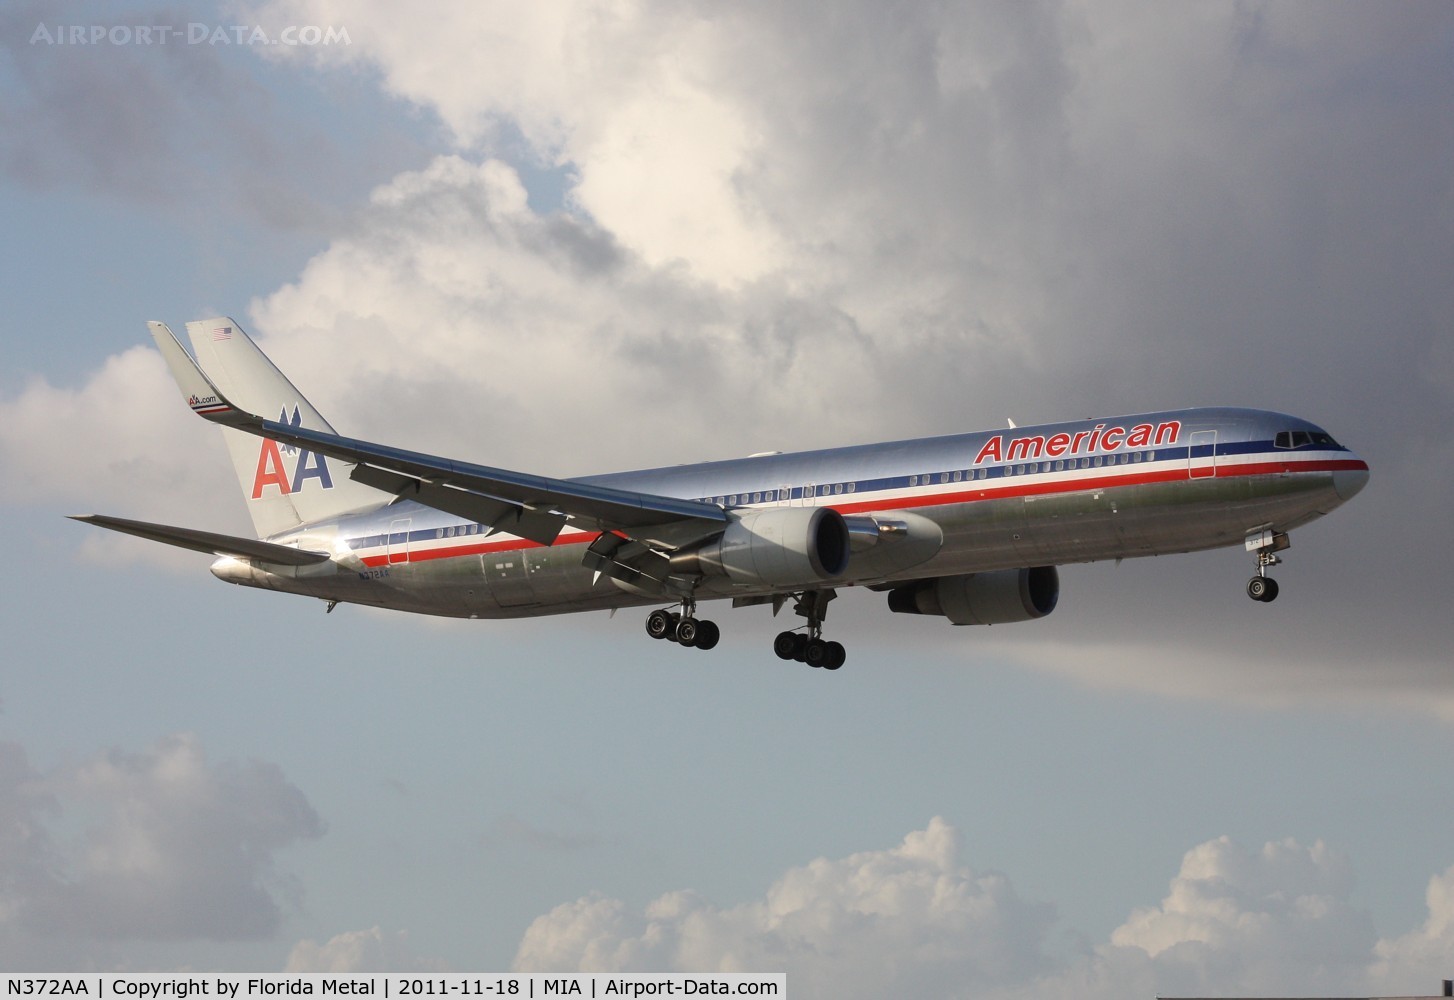 N372AA, 1992 Boeing 767-323 C/N 25199, American 767 landing Runway 9 near El Dorado